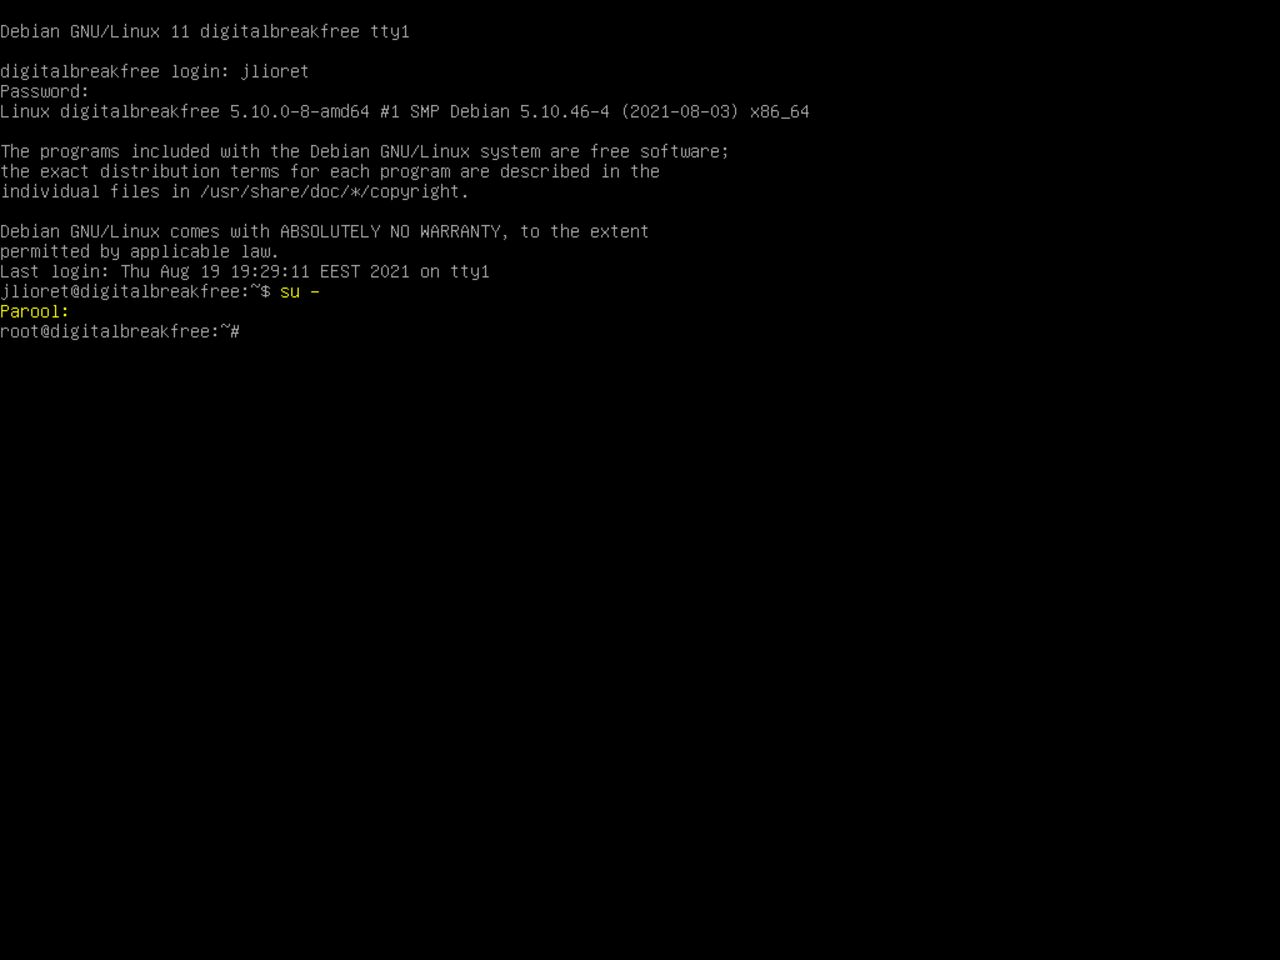 Minu esimene Linux sülearvuti - Sisse logitud root super kasutajana uues debiani installatsioonis